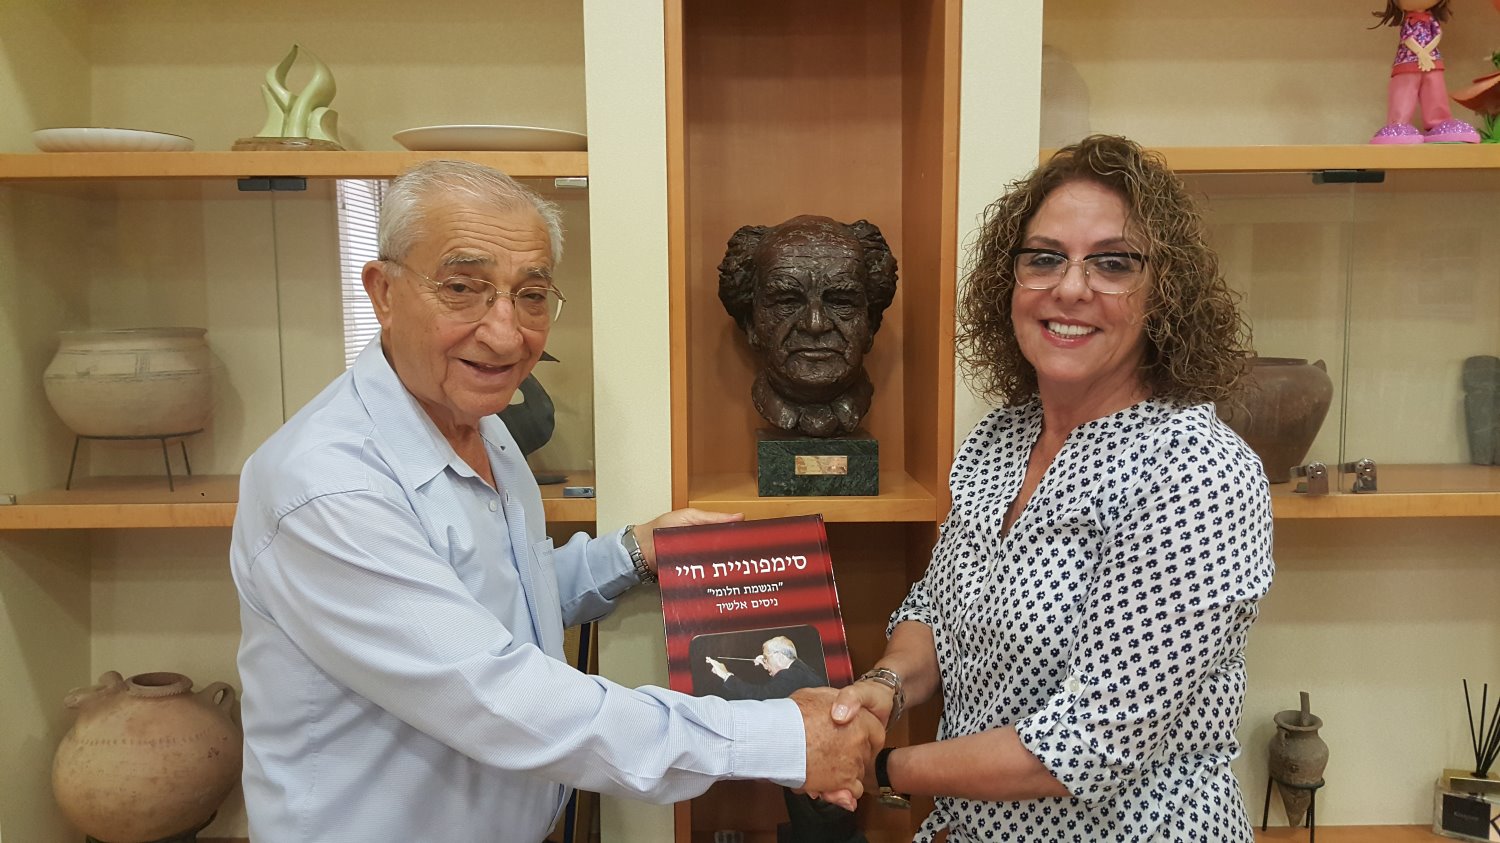 נסים אלשיך מעניק את ספרו לנשיאת האוניברסיטה, פרופ' רבקה כרמי. צילום: אוניברסיטת בן-גוריון